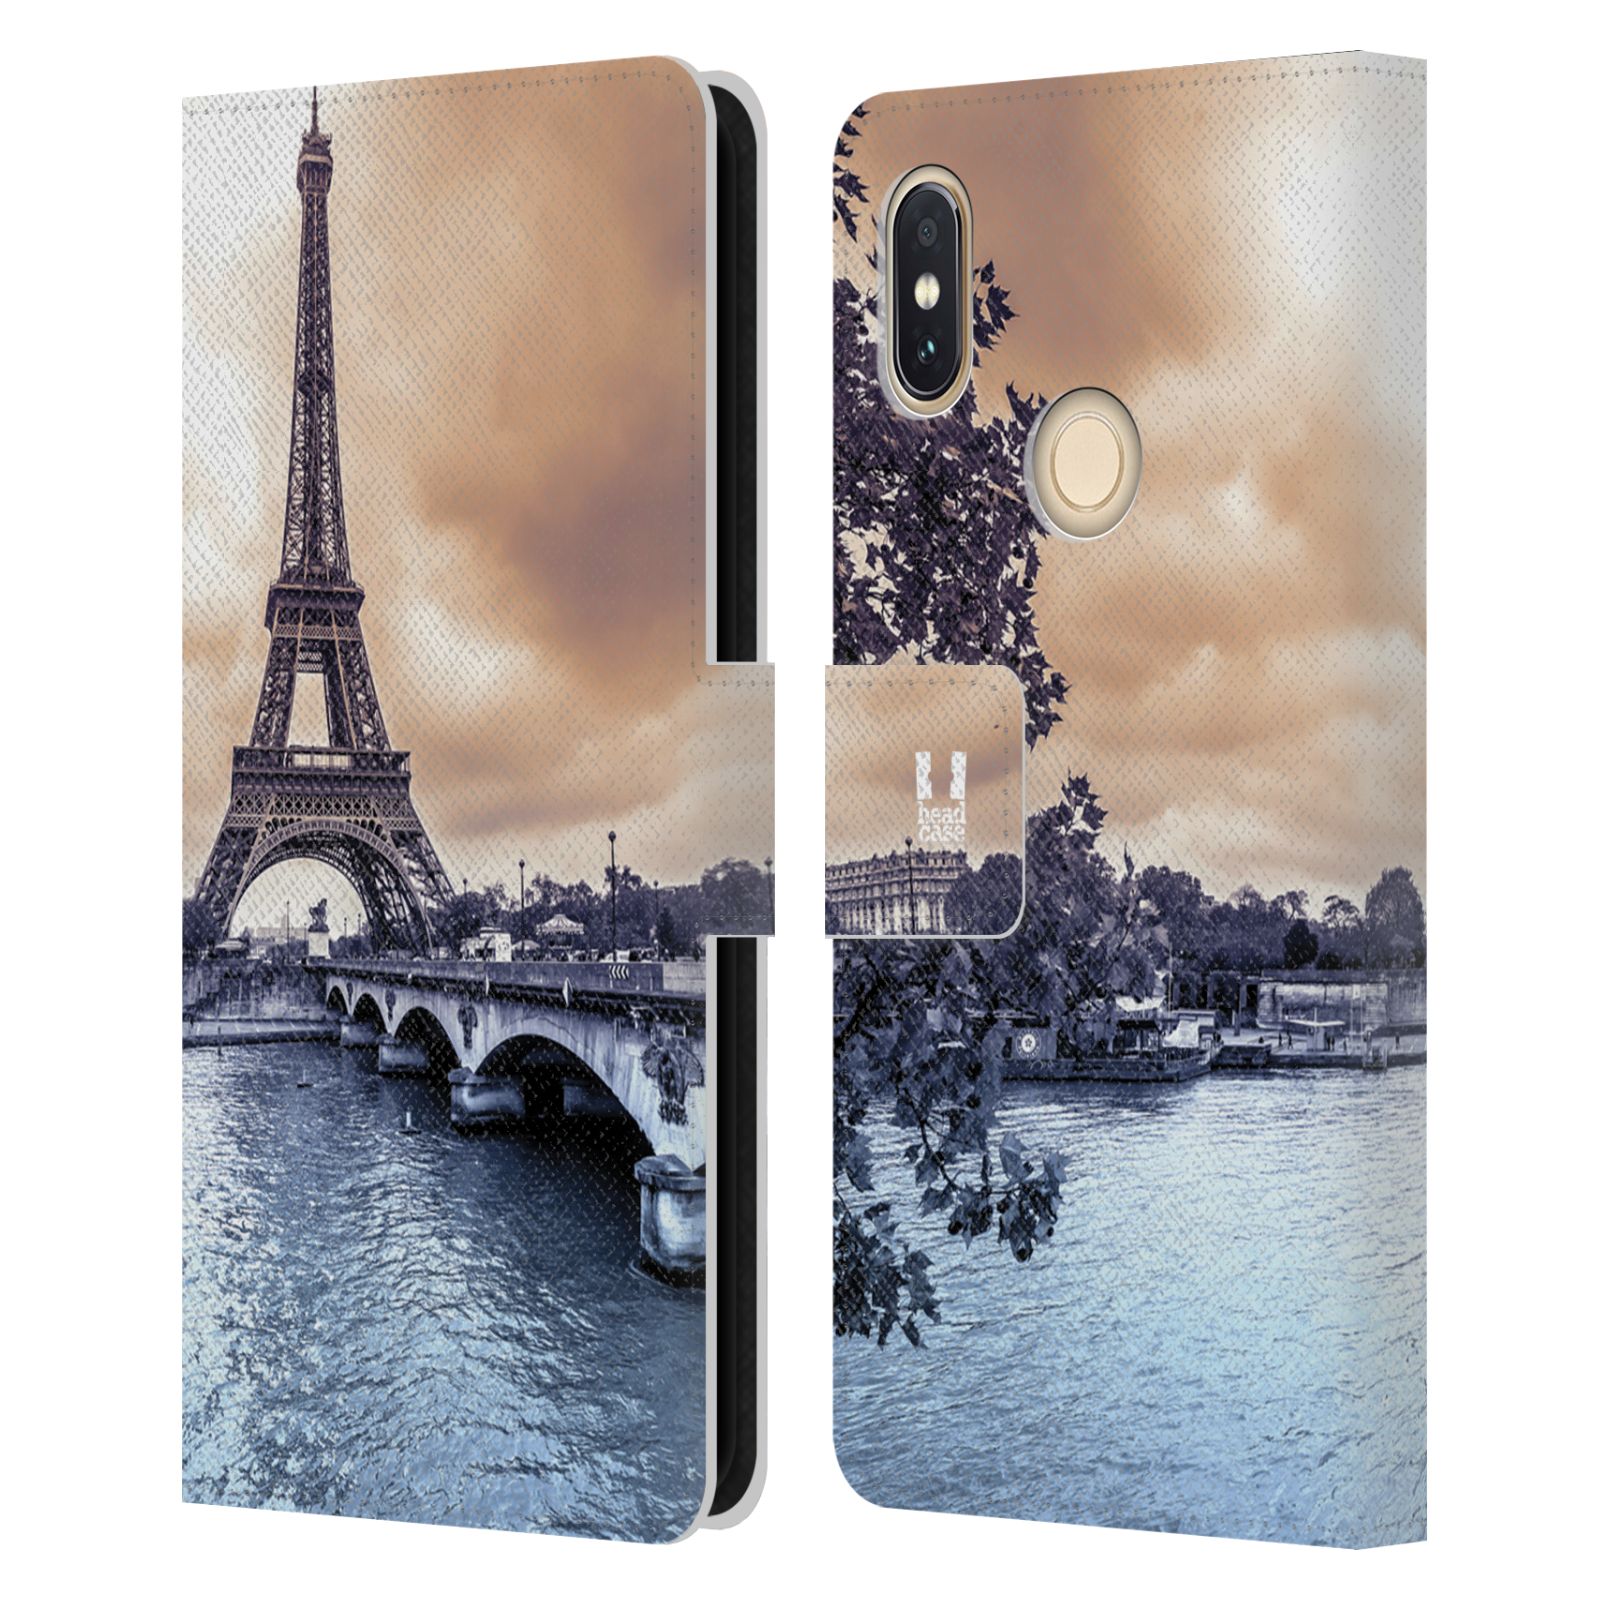 Pouzdro na mobil Xiaomi Redmi S2 - Head Case - Paříž Eiffelova věž